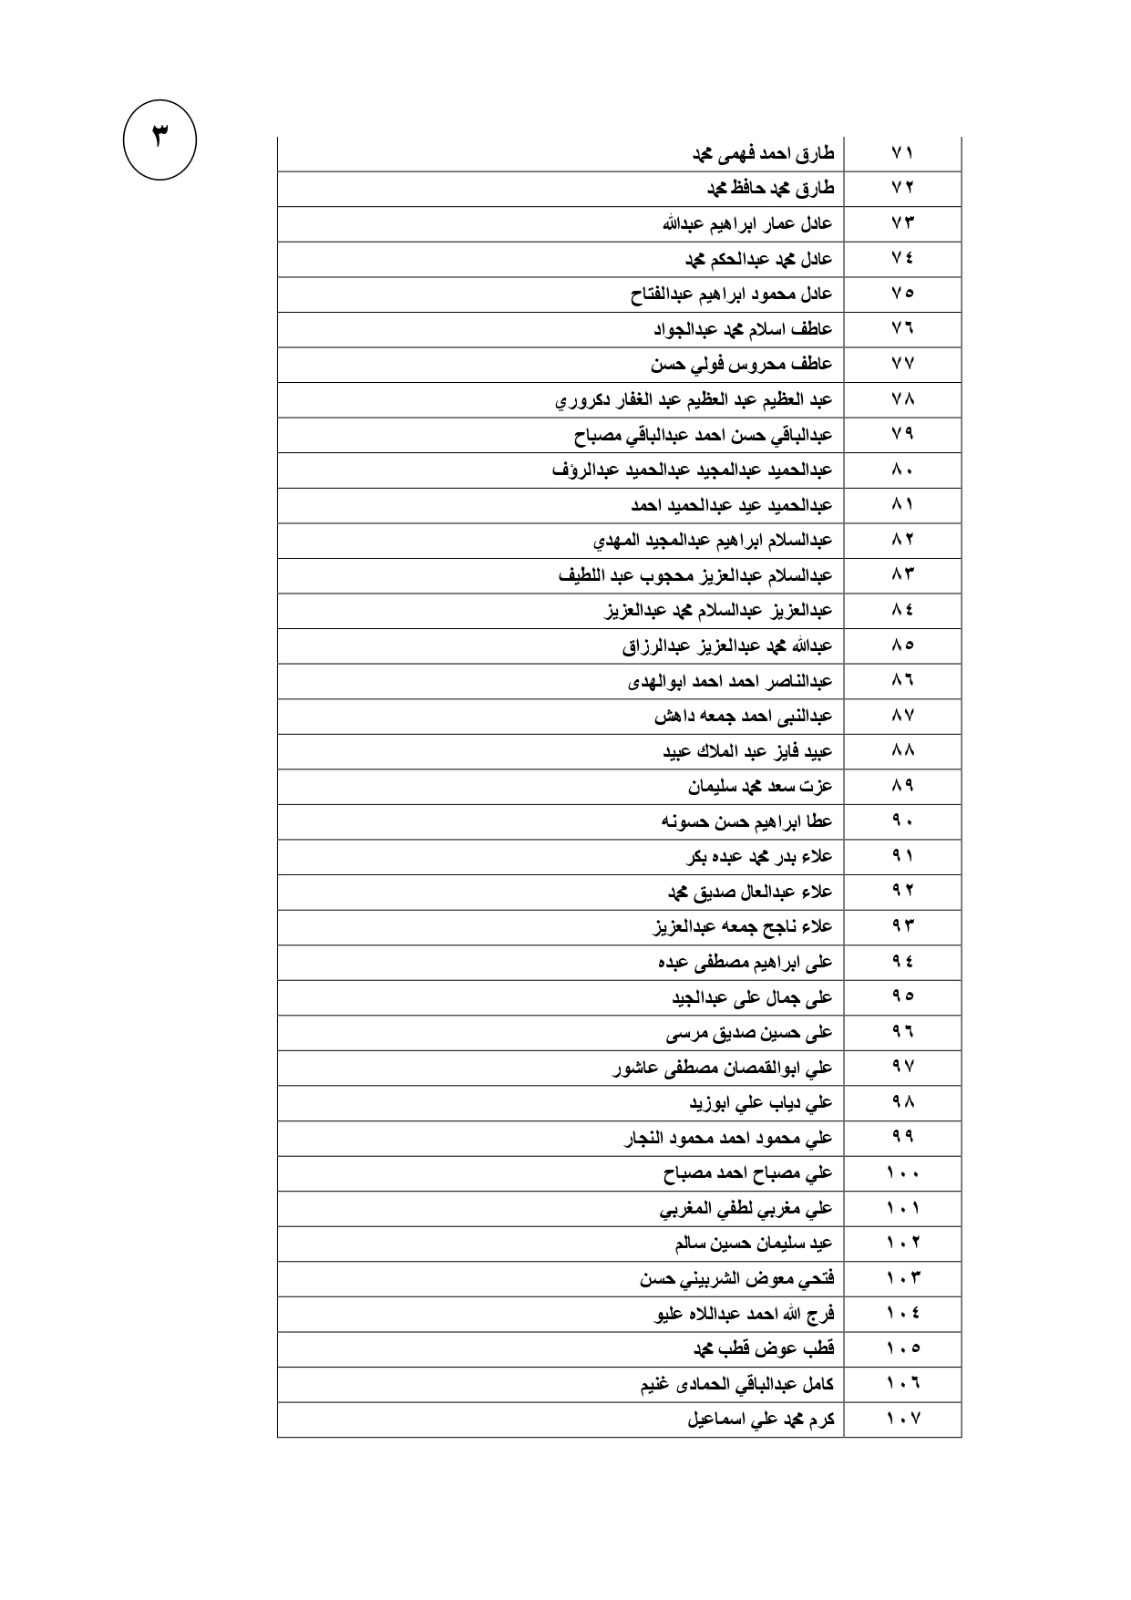   القائمة الـ117 للعمالة مصرية التي غادرت الأردن